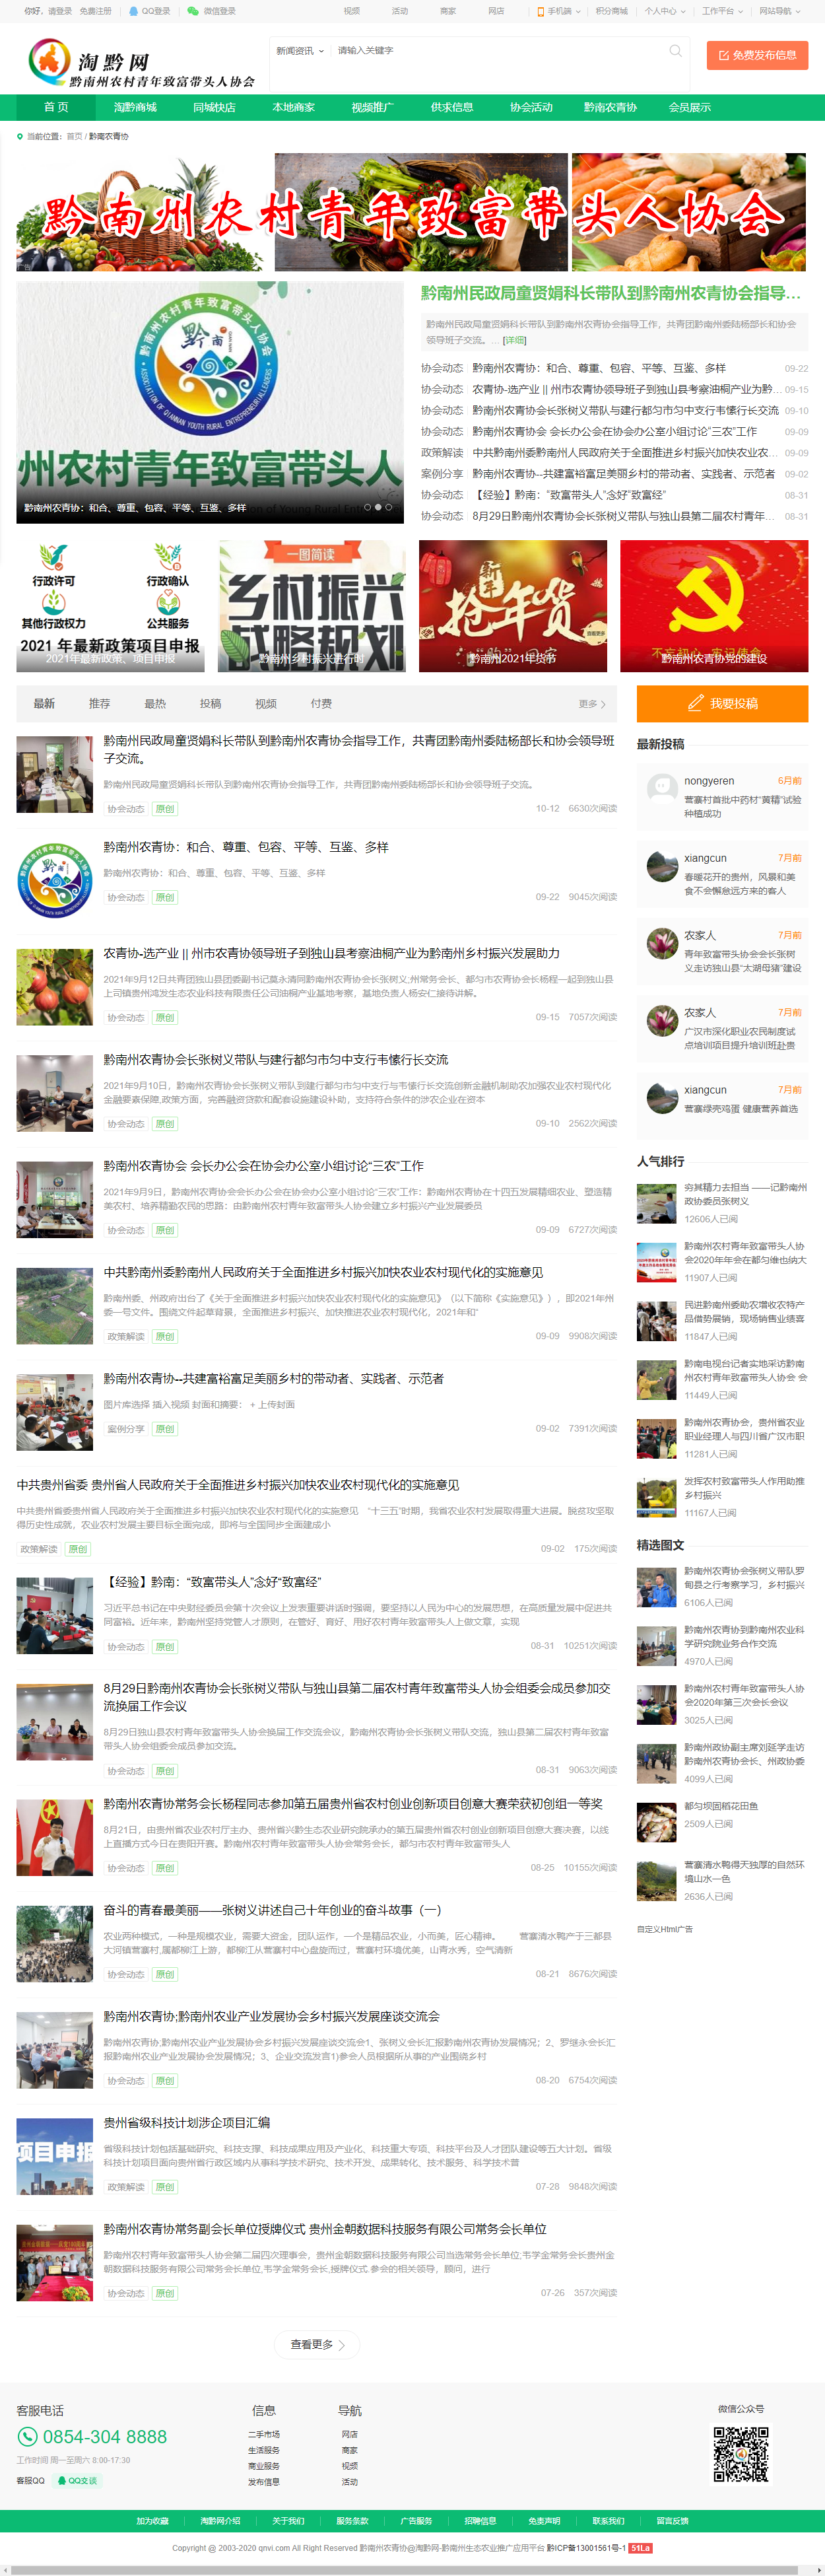 贵州黔兴隆农牧有限公司网站案例